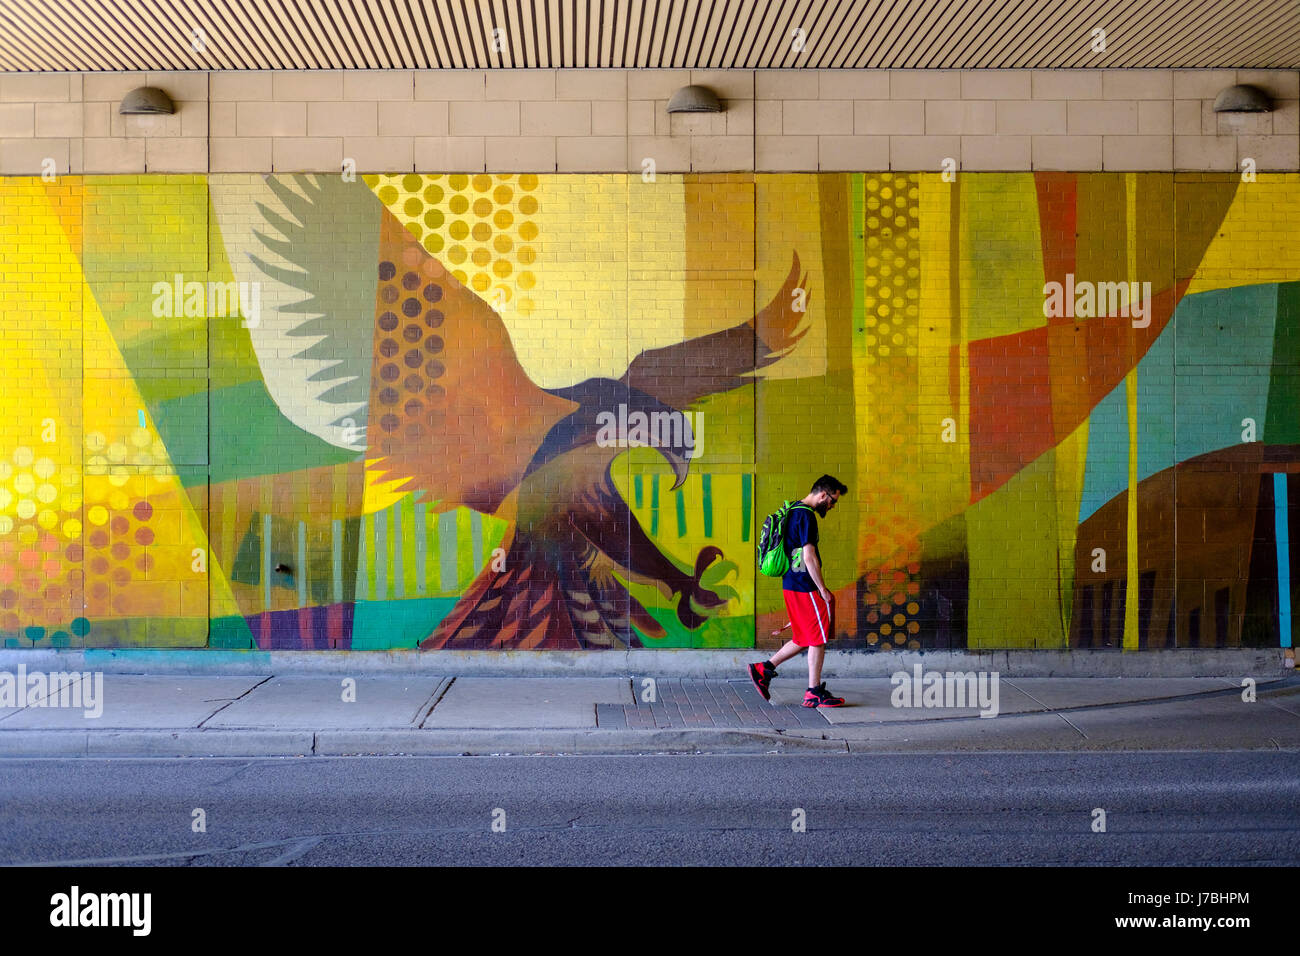 Graffiti art mural, eagle sur le point de prendre une marche des piétons masculins sur le trottoir, prédateur et proie, danger, l'endettement étudiant, sac à dos, stress concept. Banque D'Images